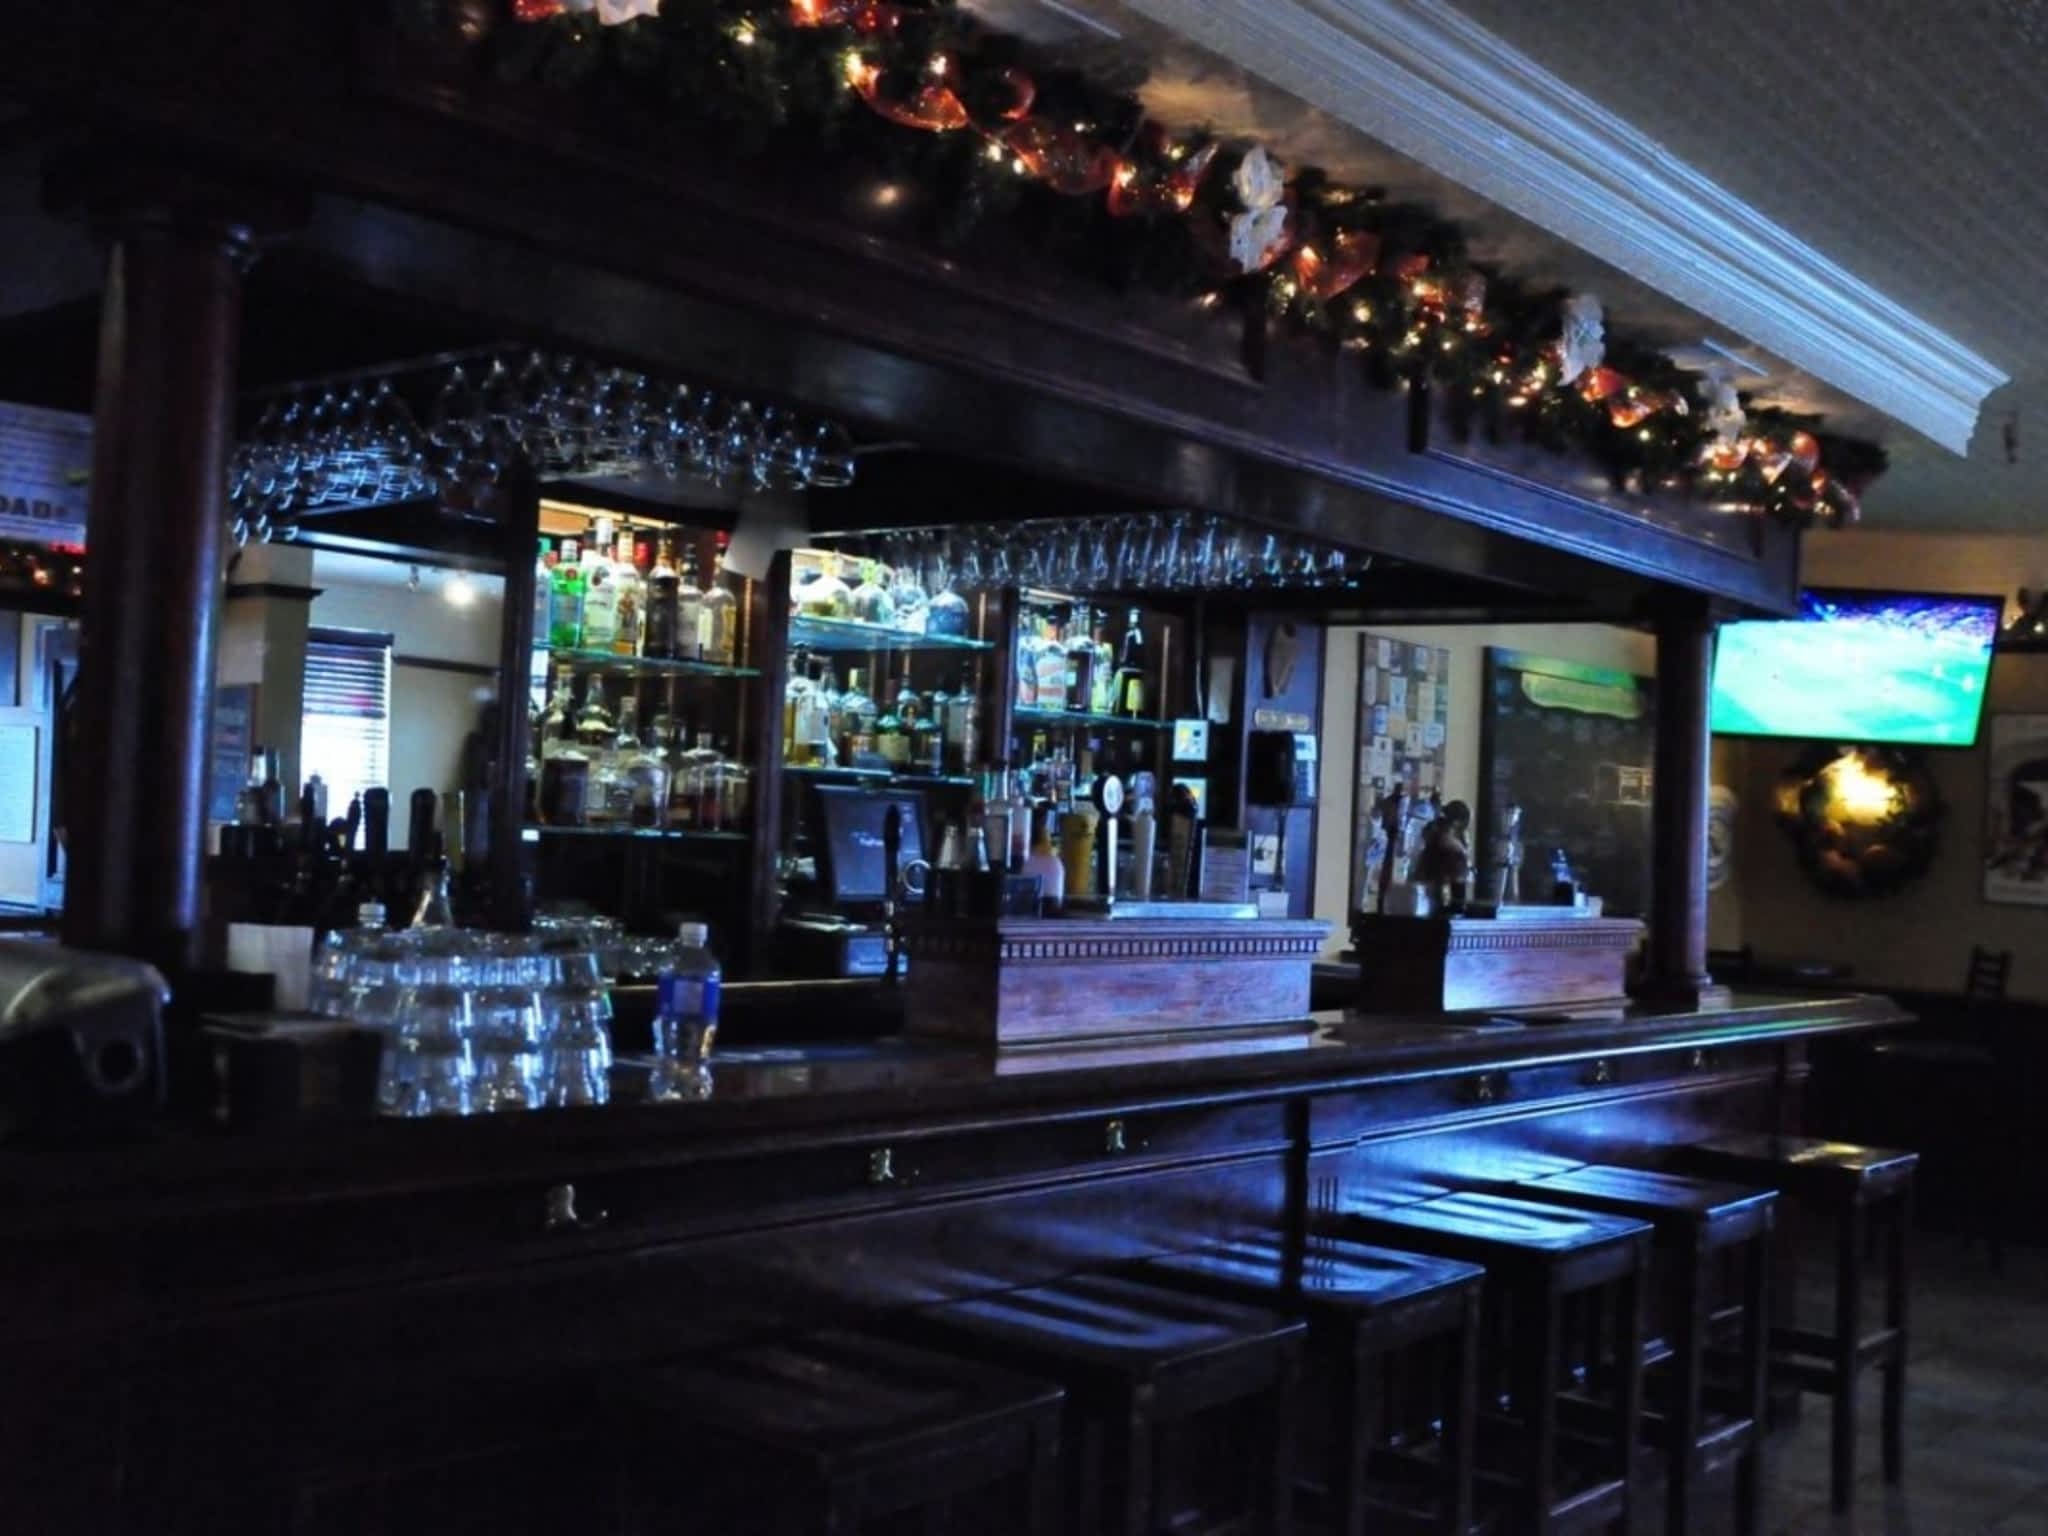 photo Cuchulainn's Irish Pub